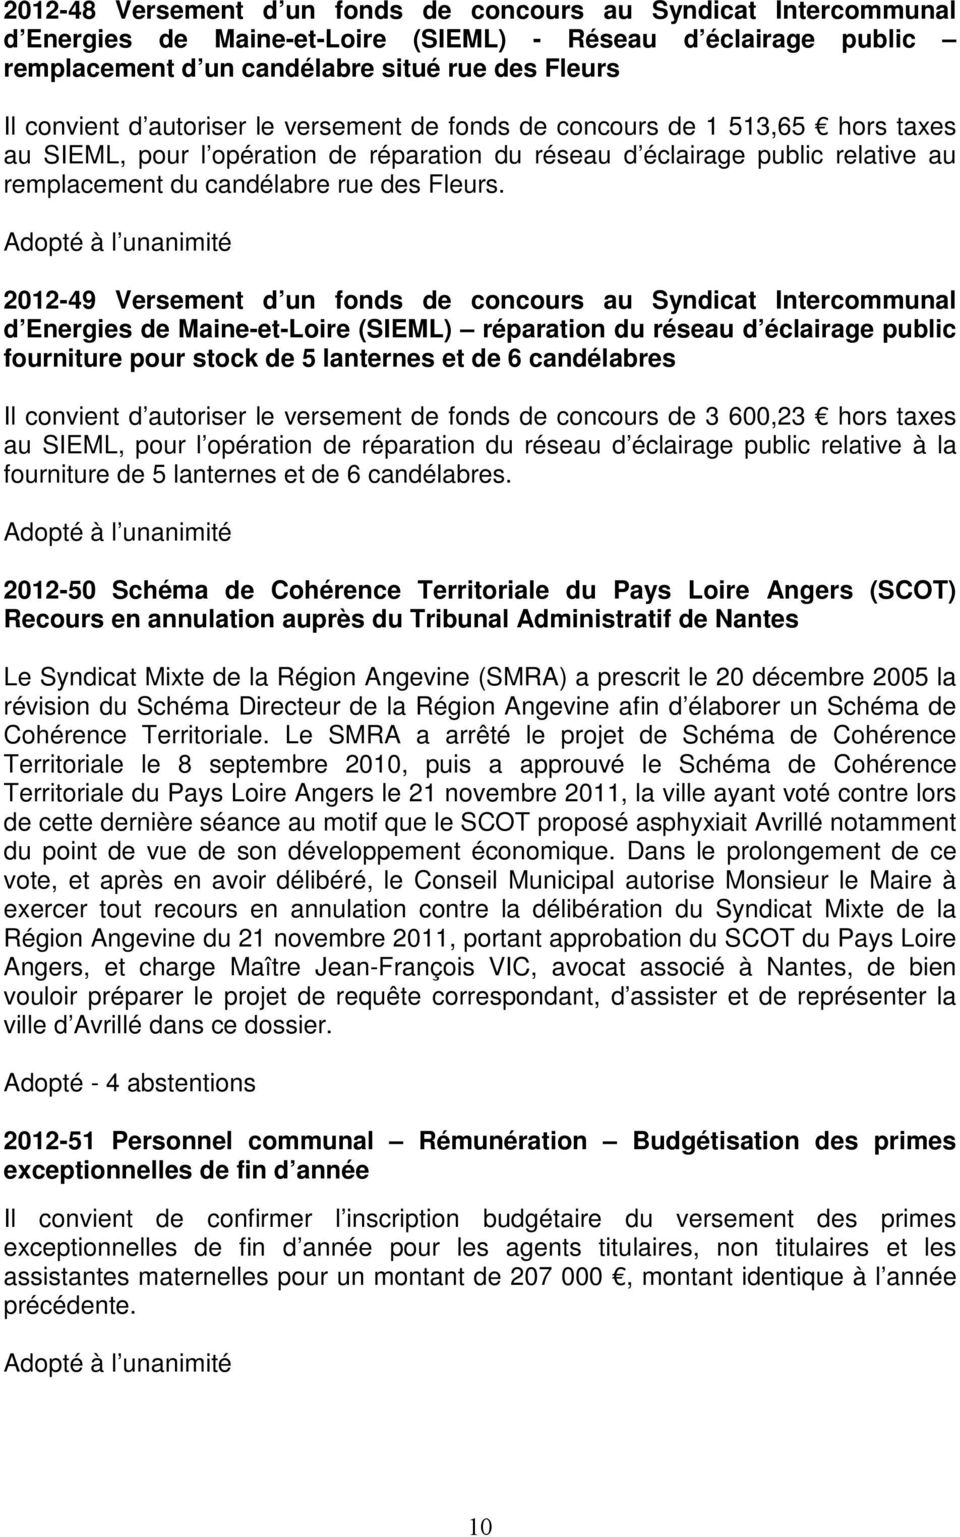 2012-49 Versement d un fonds de concours au Syndicat Intercommunal d Energies de Maine-et-Loire (SIEML) réparation du réseau d éclairage public fourniture pour stock de 5 lanternes et de 6